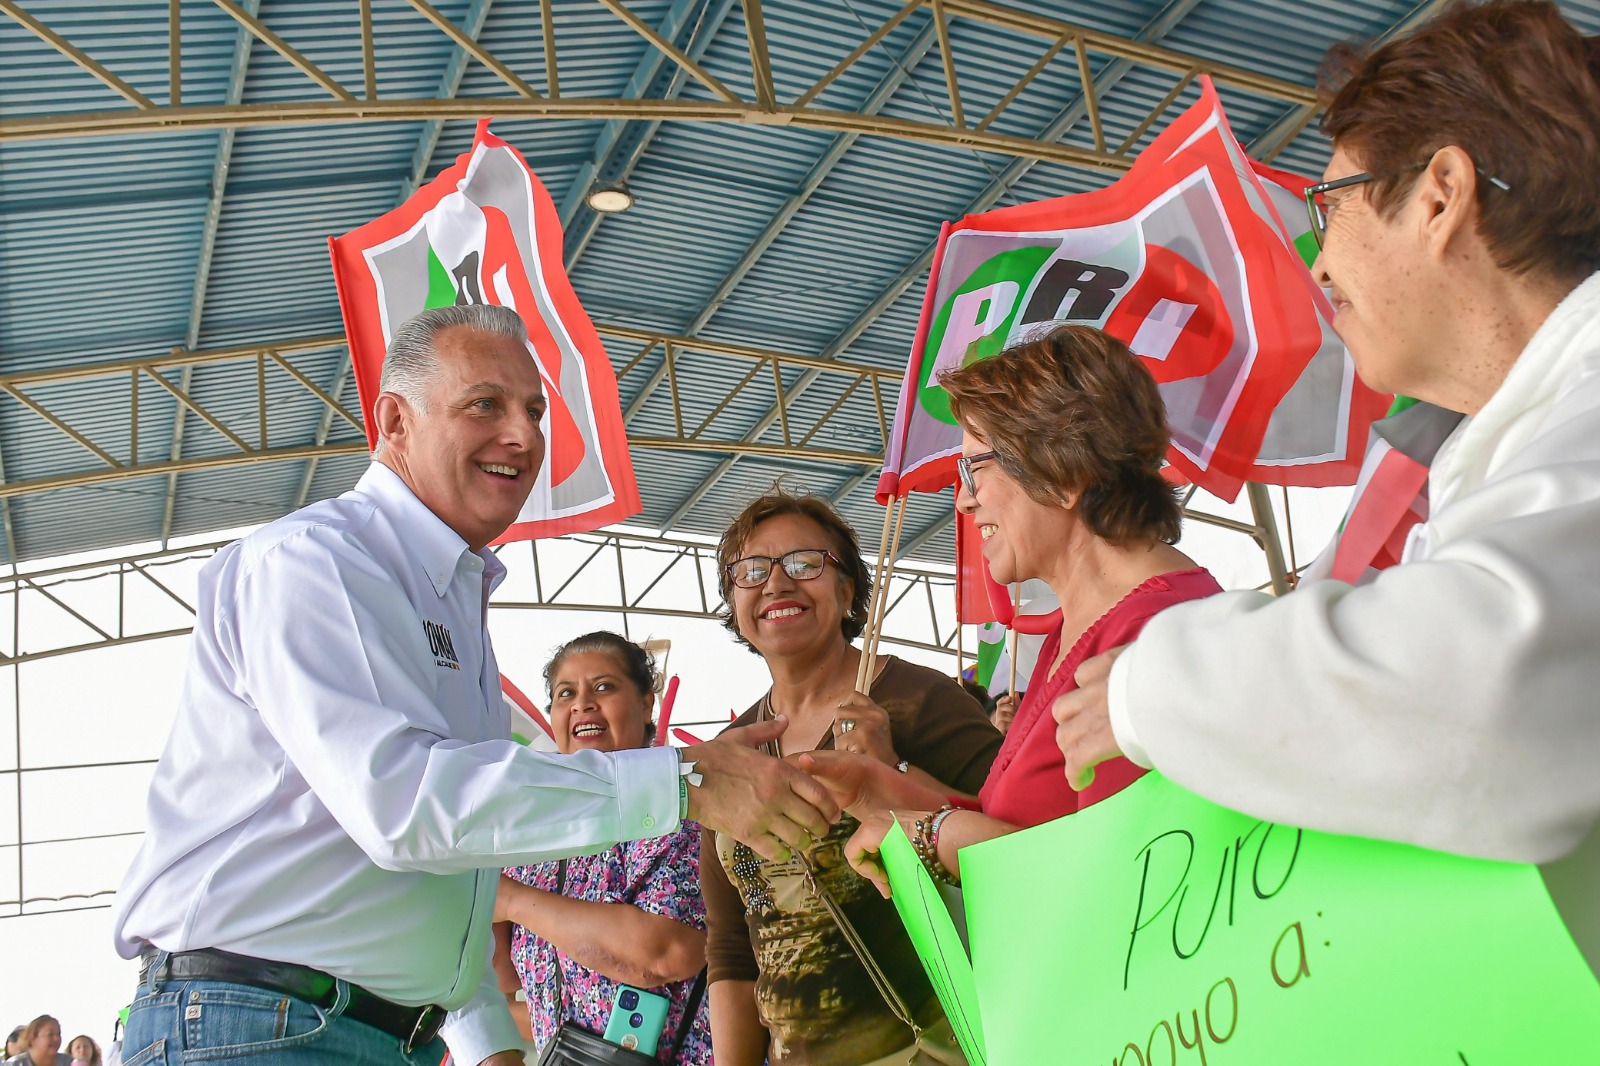 “Con seguridad tenemos empleo, crecimiento económico… El Torreón que queremos” Roman Cepeda